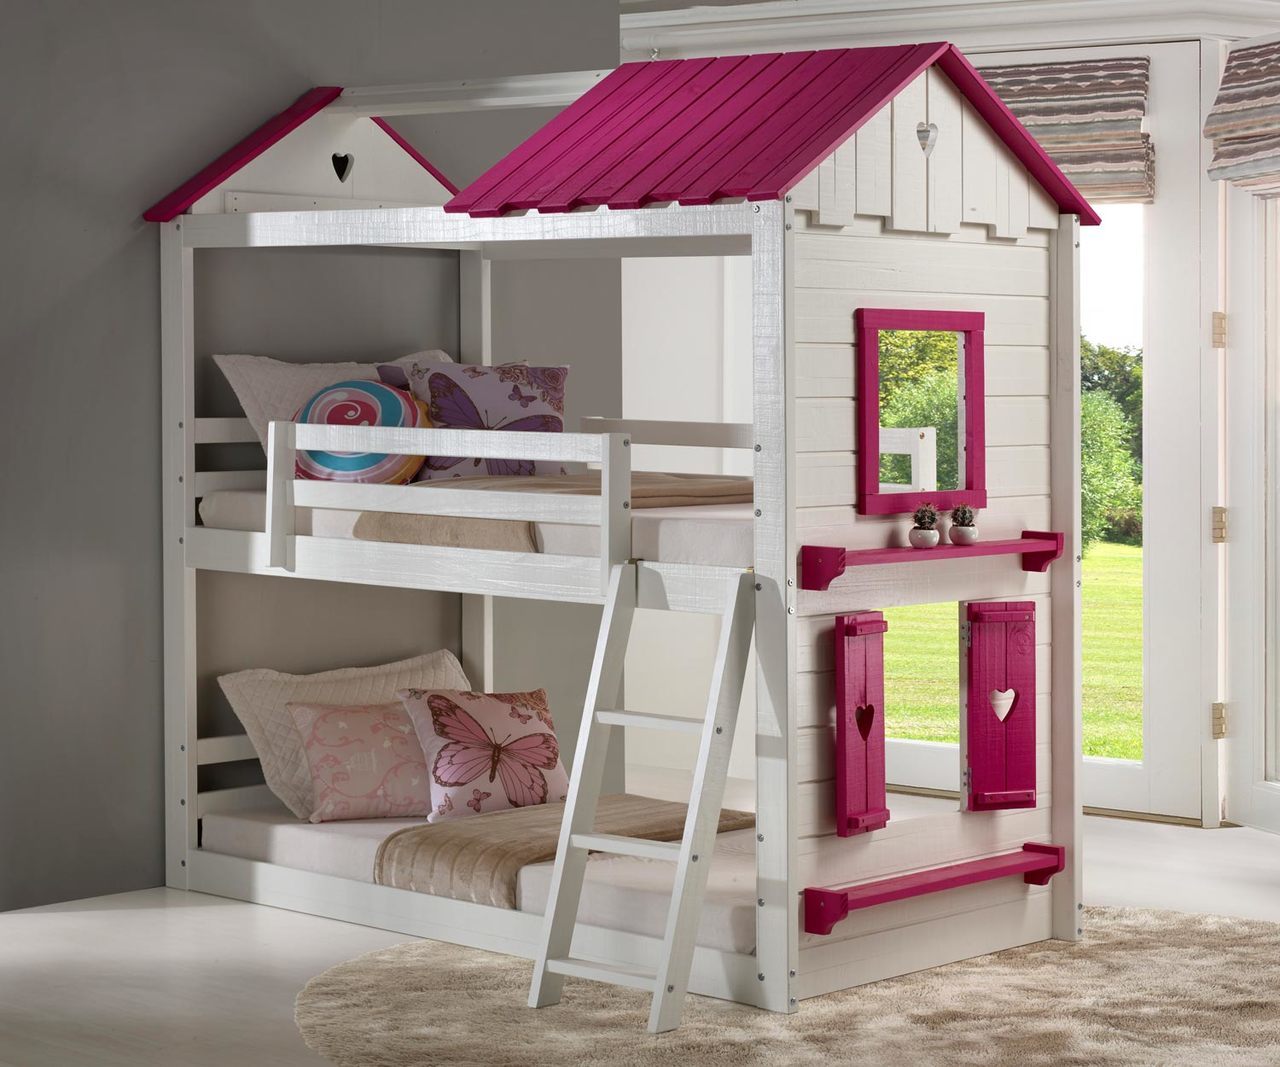 Spotlight On Girls Bunk Beds Kids, Cute Bunk Beds For Girls